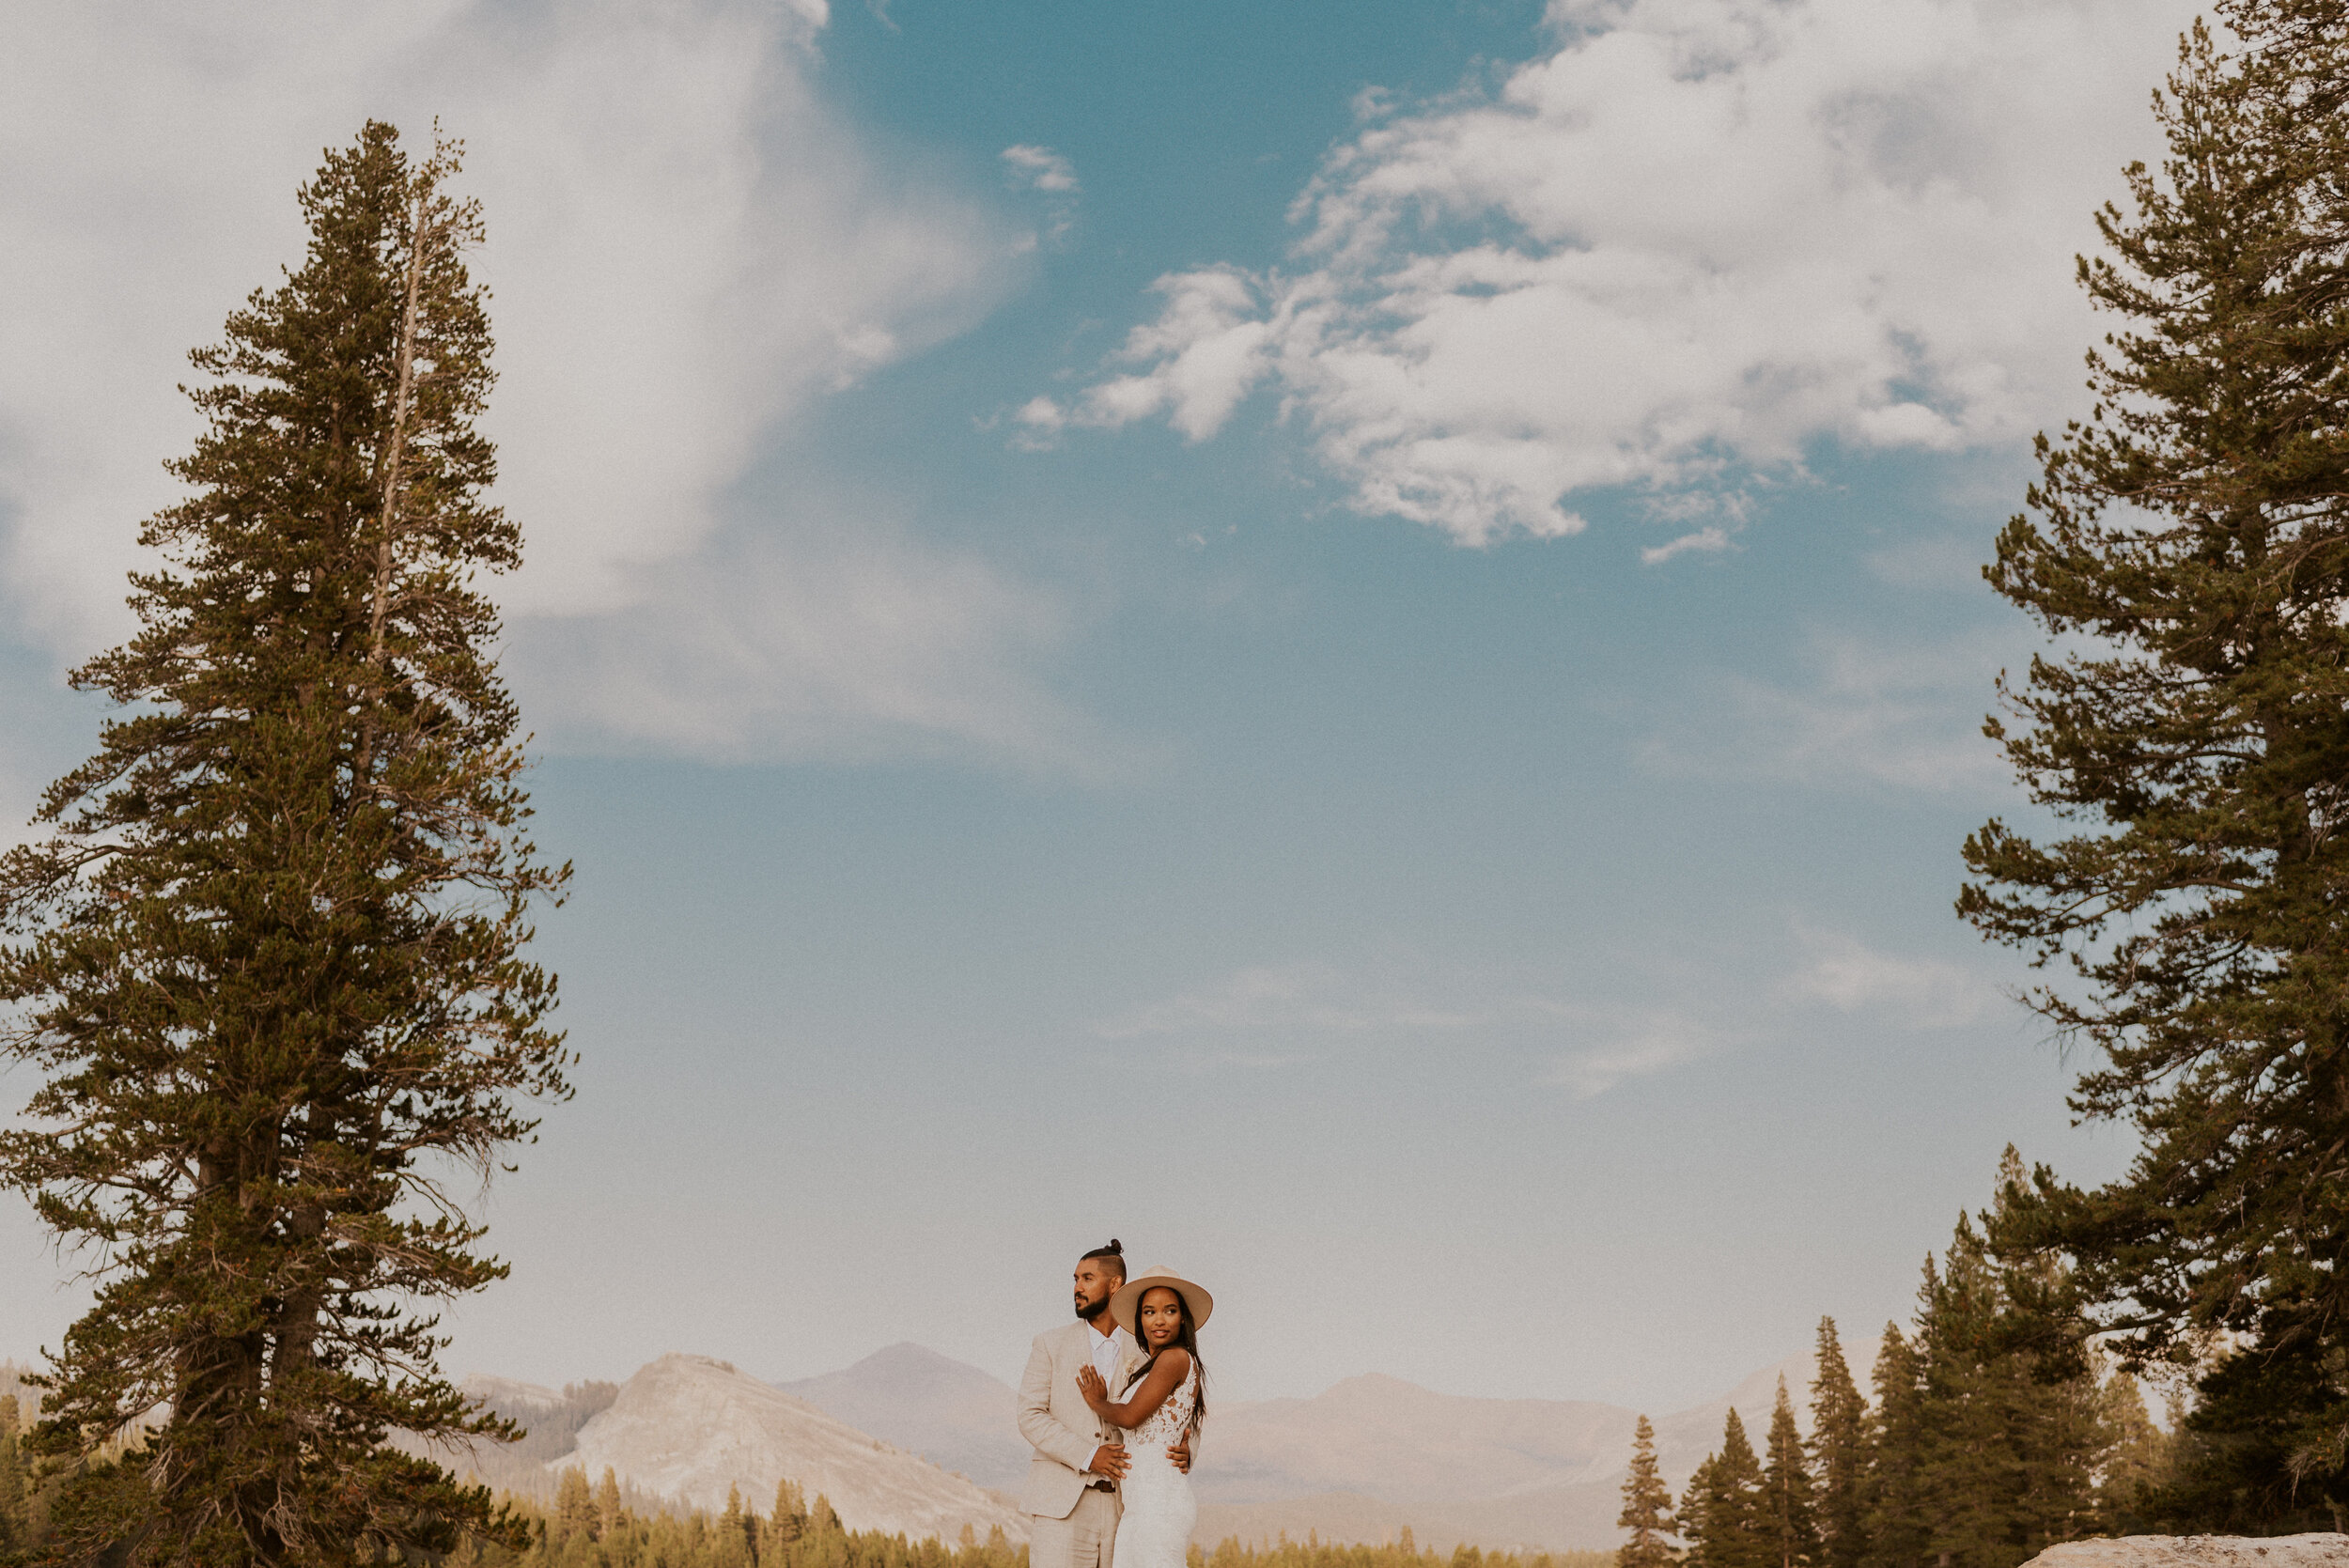 Tuolumne Meadows Elopement | Eloping in Yosemite National Park | Adventure Elopement Wedding | Yosemite Elopement Photographer | How to Elope